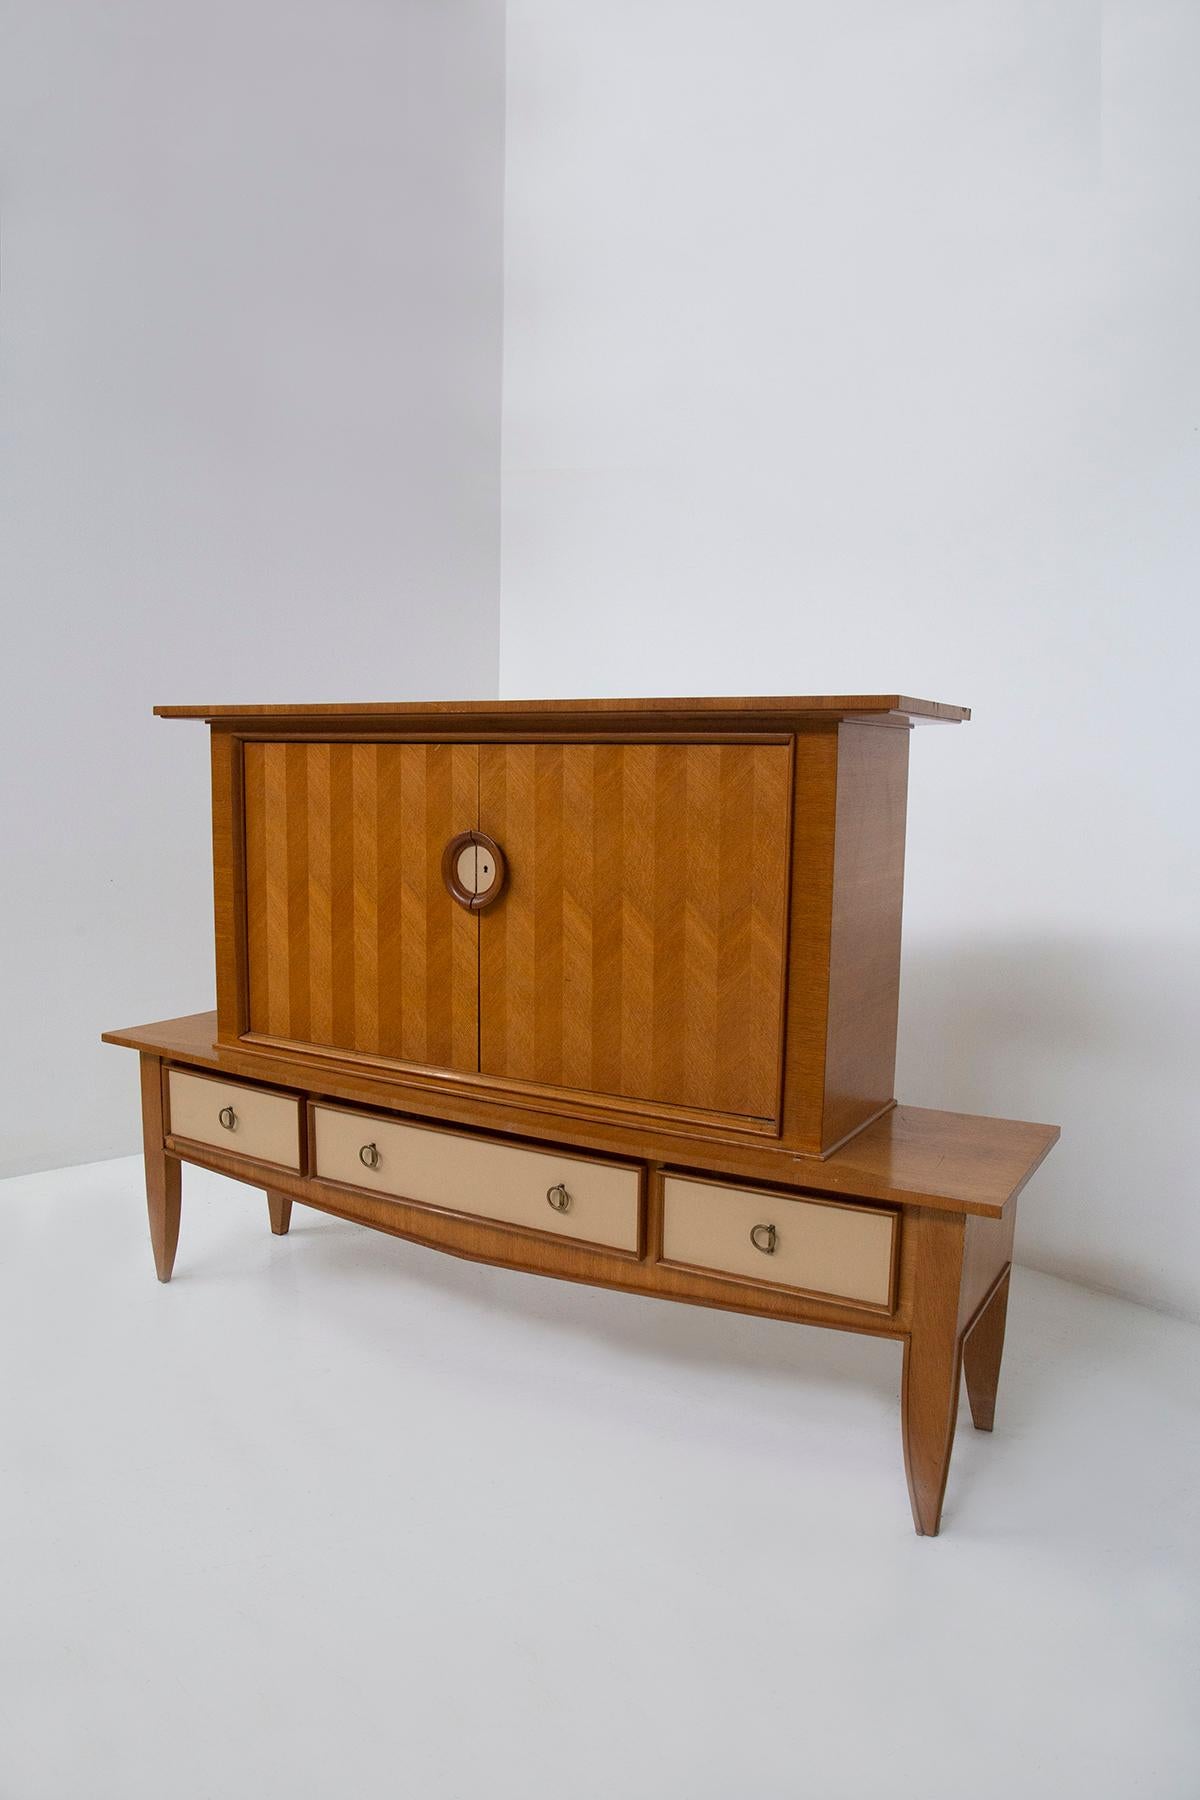 Ce meuble de salon élégant et raffiné, attribué au maître Eleg ROOMS et créé en 1950, est une véritable œuvre d'art qui enchante par sa facture. Réalisée en bois de chêne, elle bénéficie d'un travail extraordinaire qui mêle différentes essences de